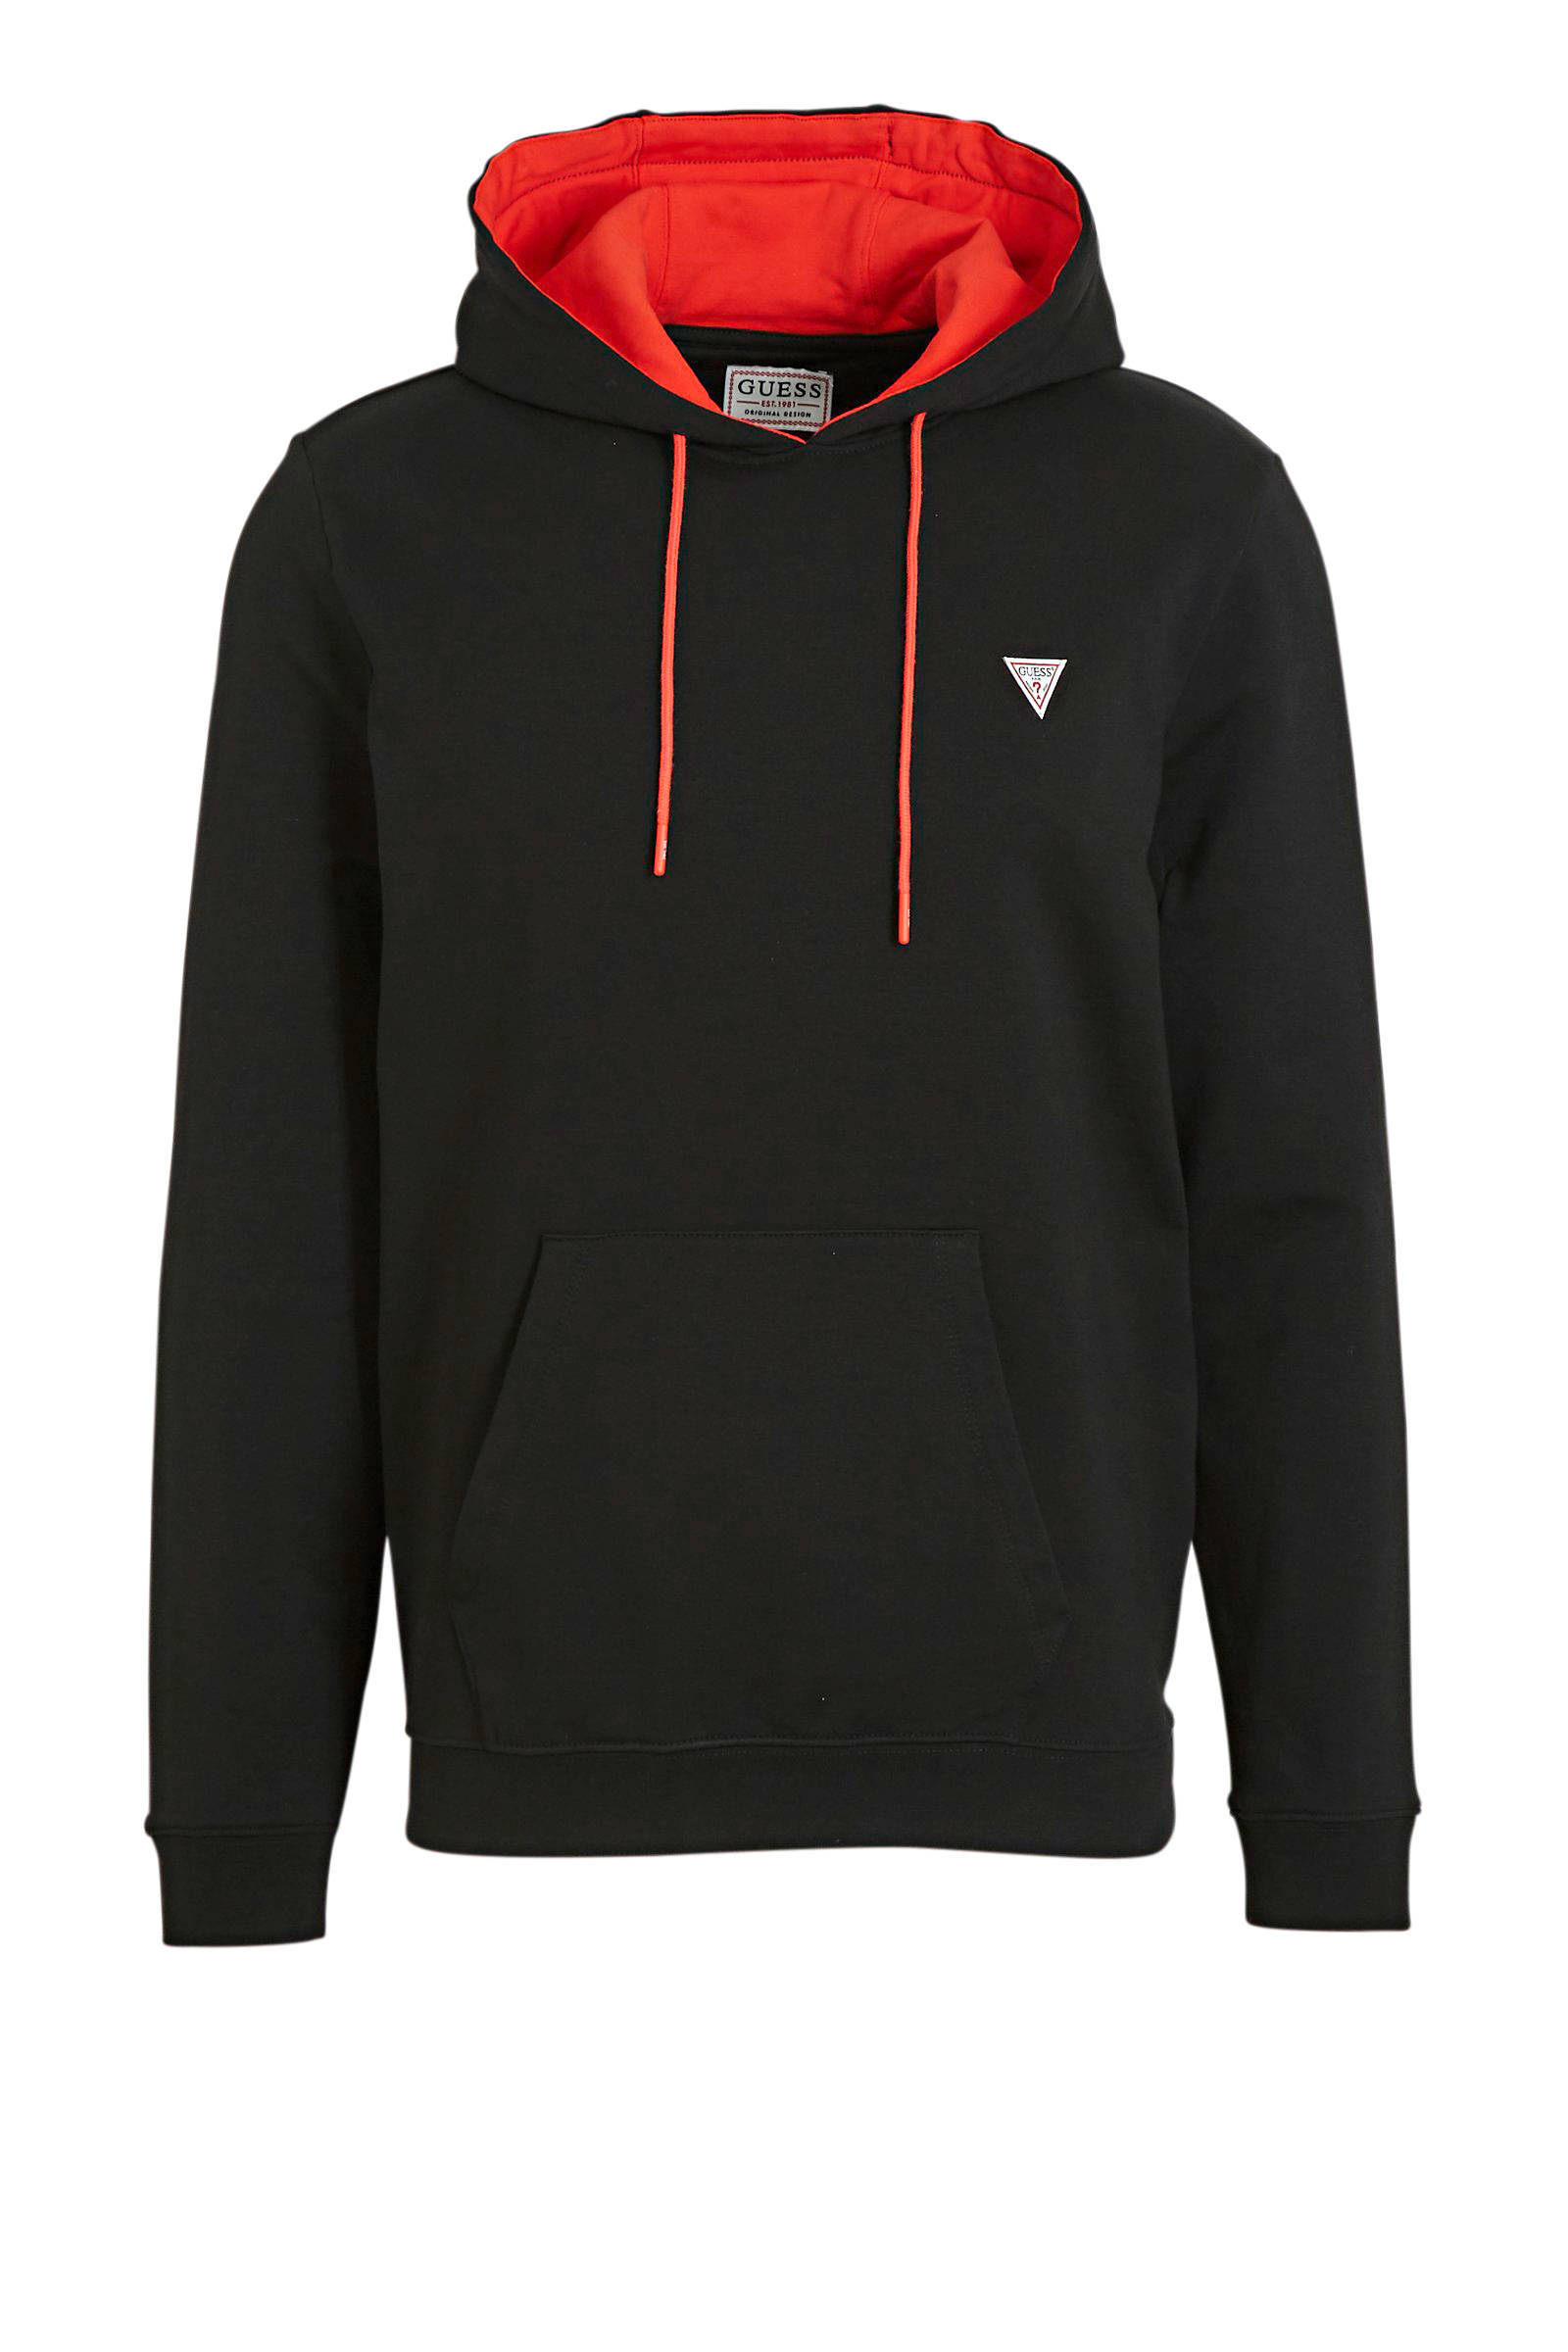 GUESS hoodie Christian zwart/rood online kopen